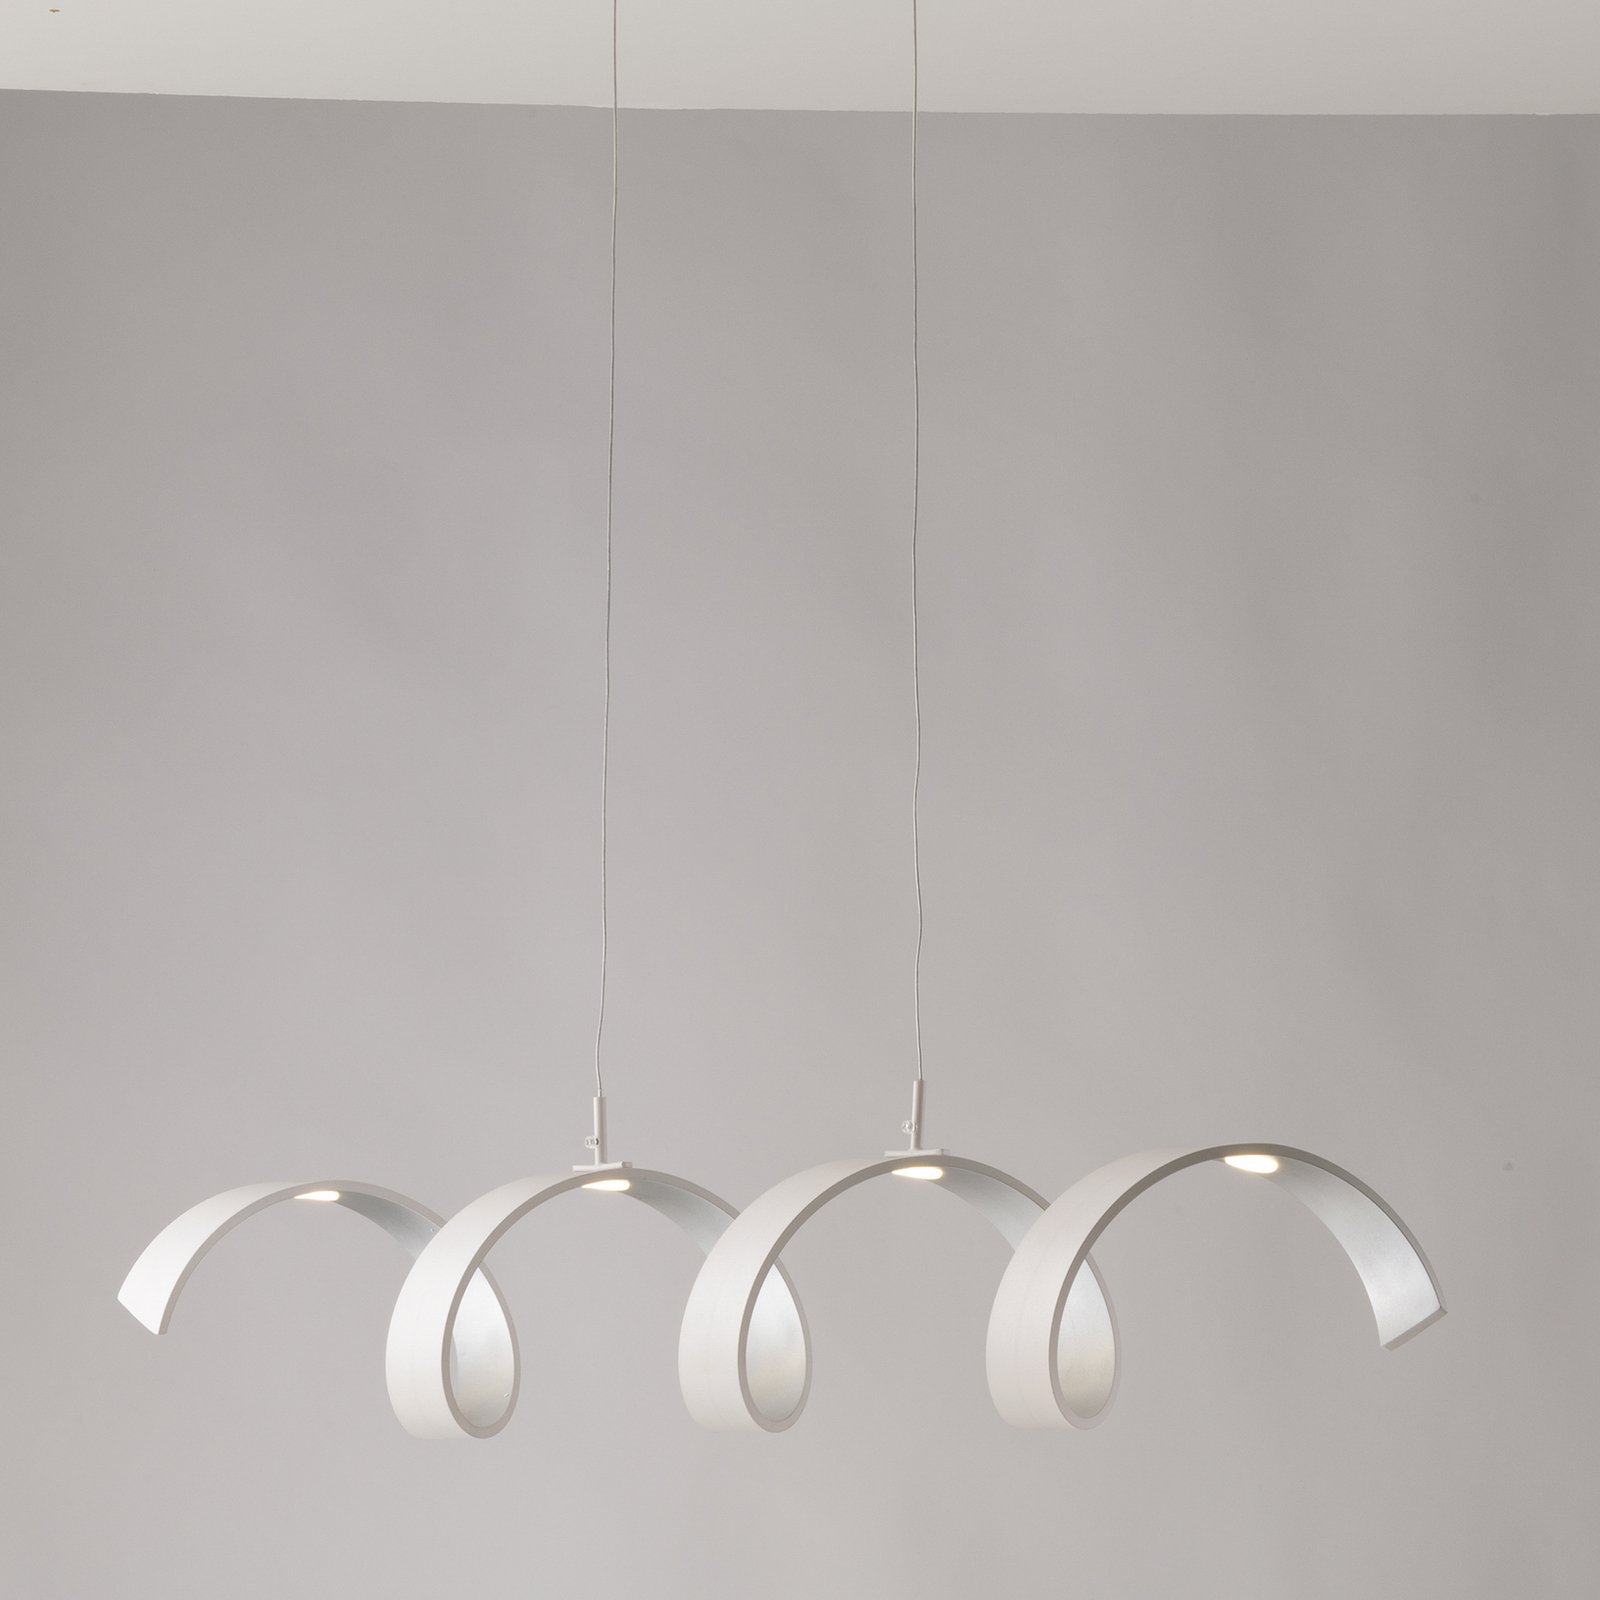 LED hanglamp Helix, wit-zilver, lengte 80 cm